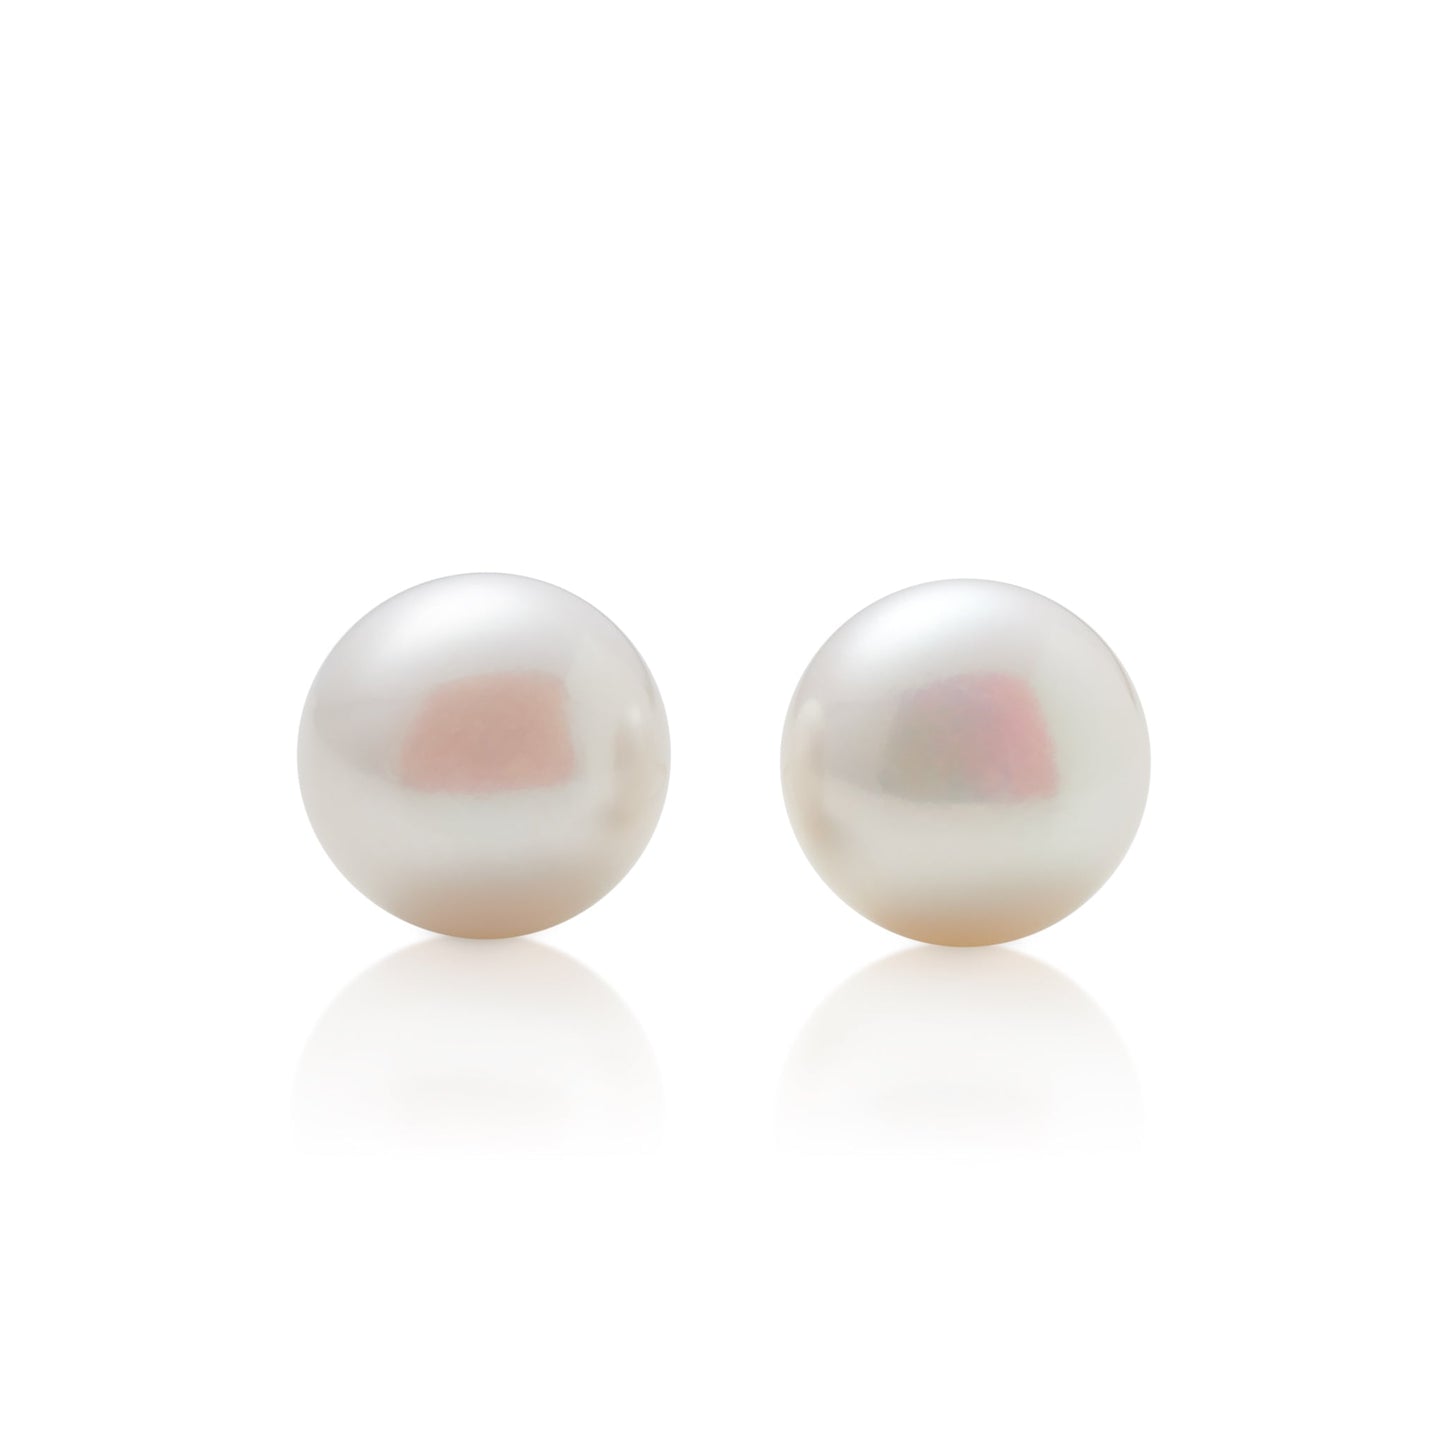 10mm Button Pearl Stud Earrings